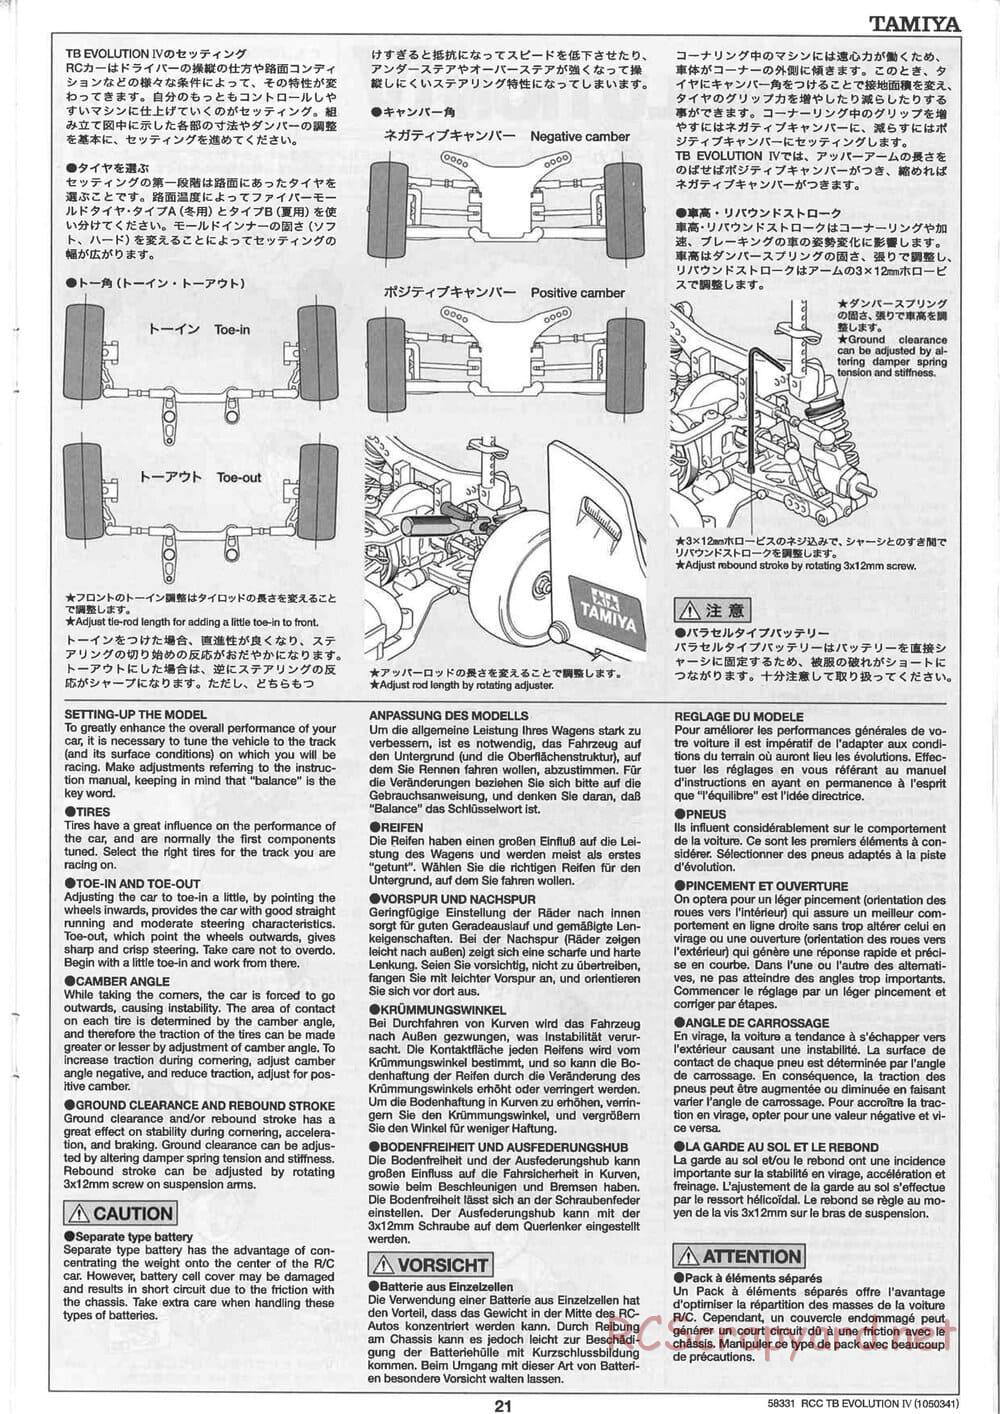 Tamiya - TB Evolution IV Chassis - Manual - Page 21